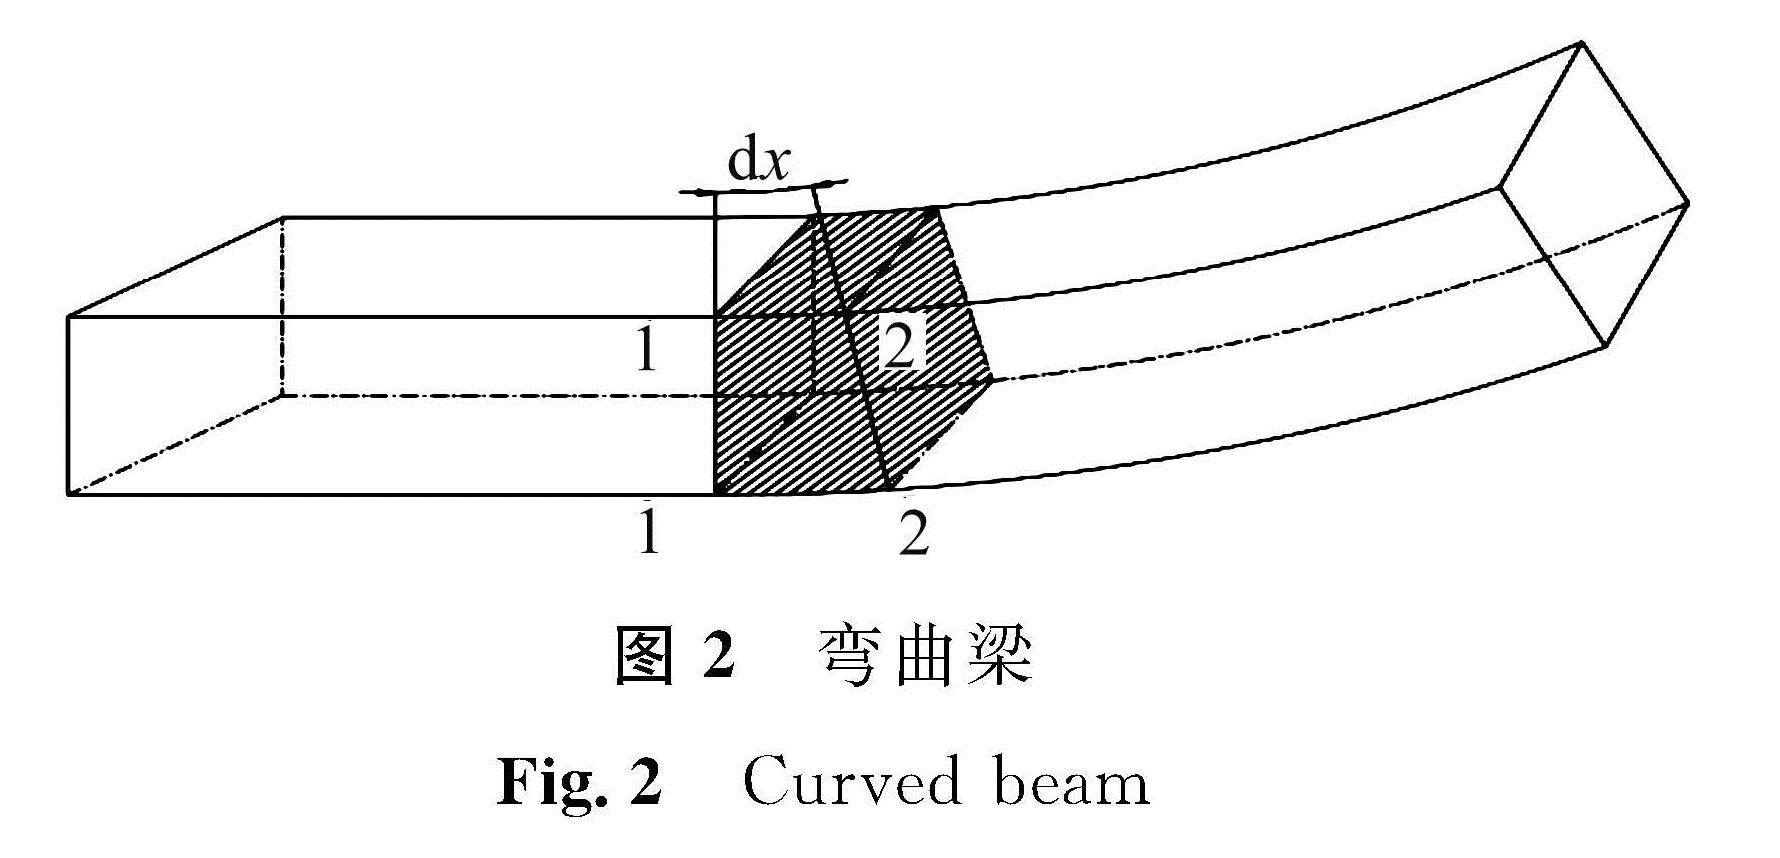 图2 弯曲梁<br/>Fig.2 Curved beam